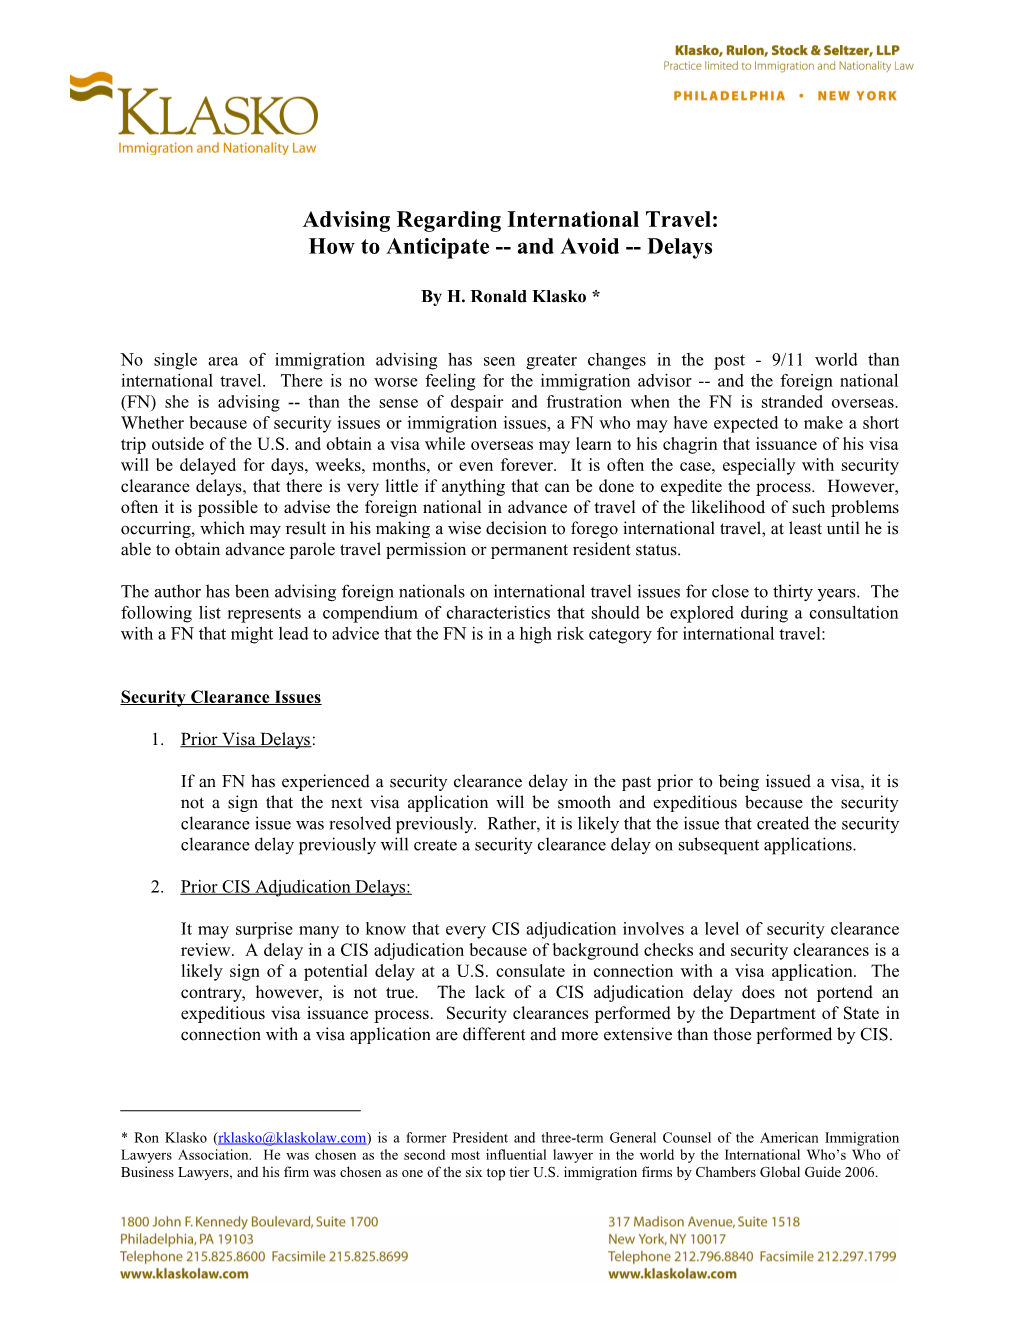 Advising Regarding International Travel - How to Anticipate (ADVISI 1;1)